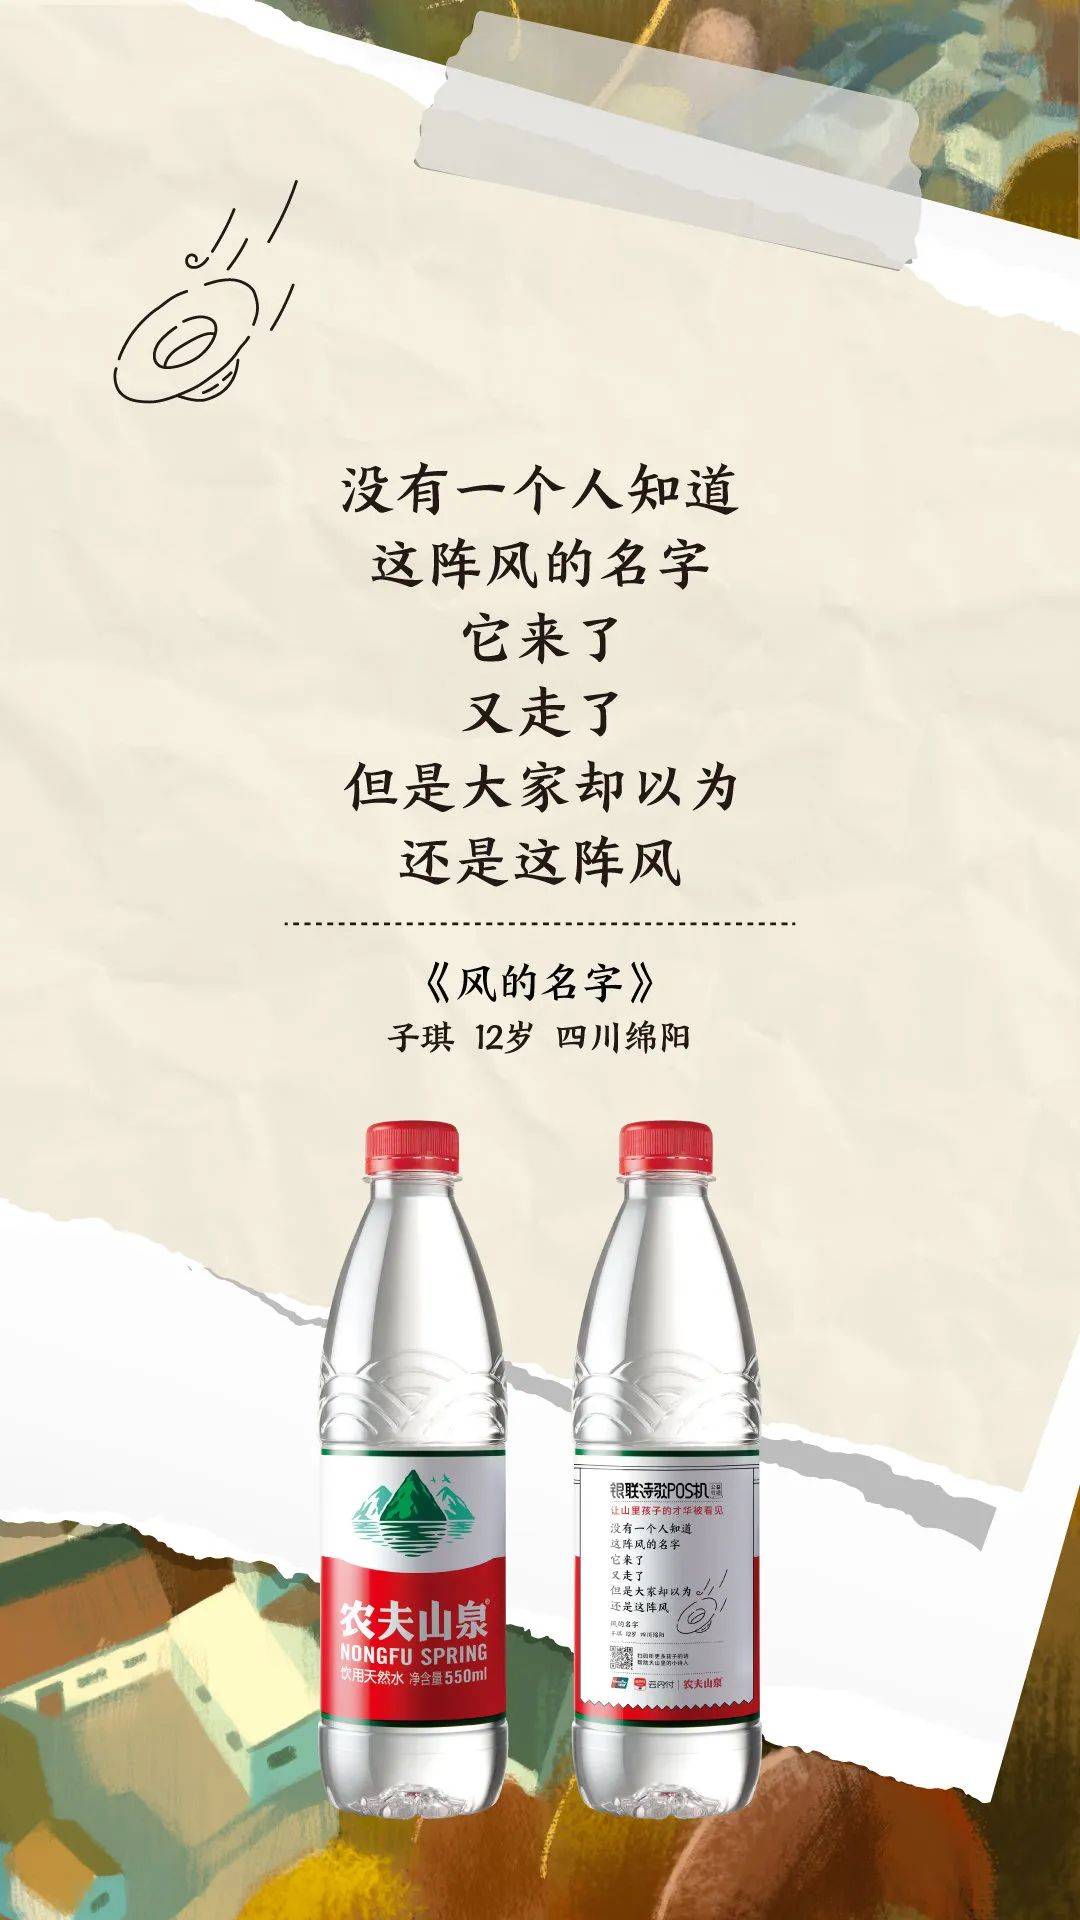 高德、杜蕾斯、中国银联都开始写诗，品牌为何倾向“诗意化”营销？